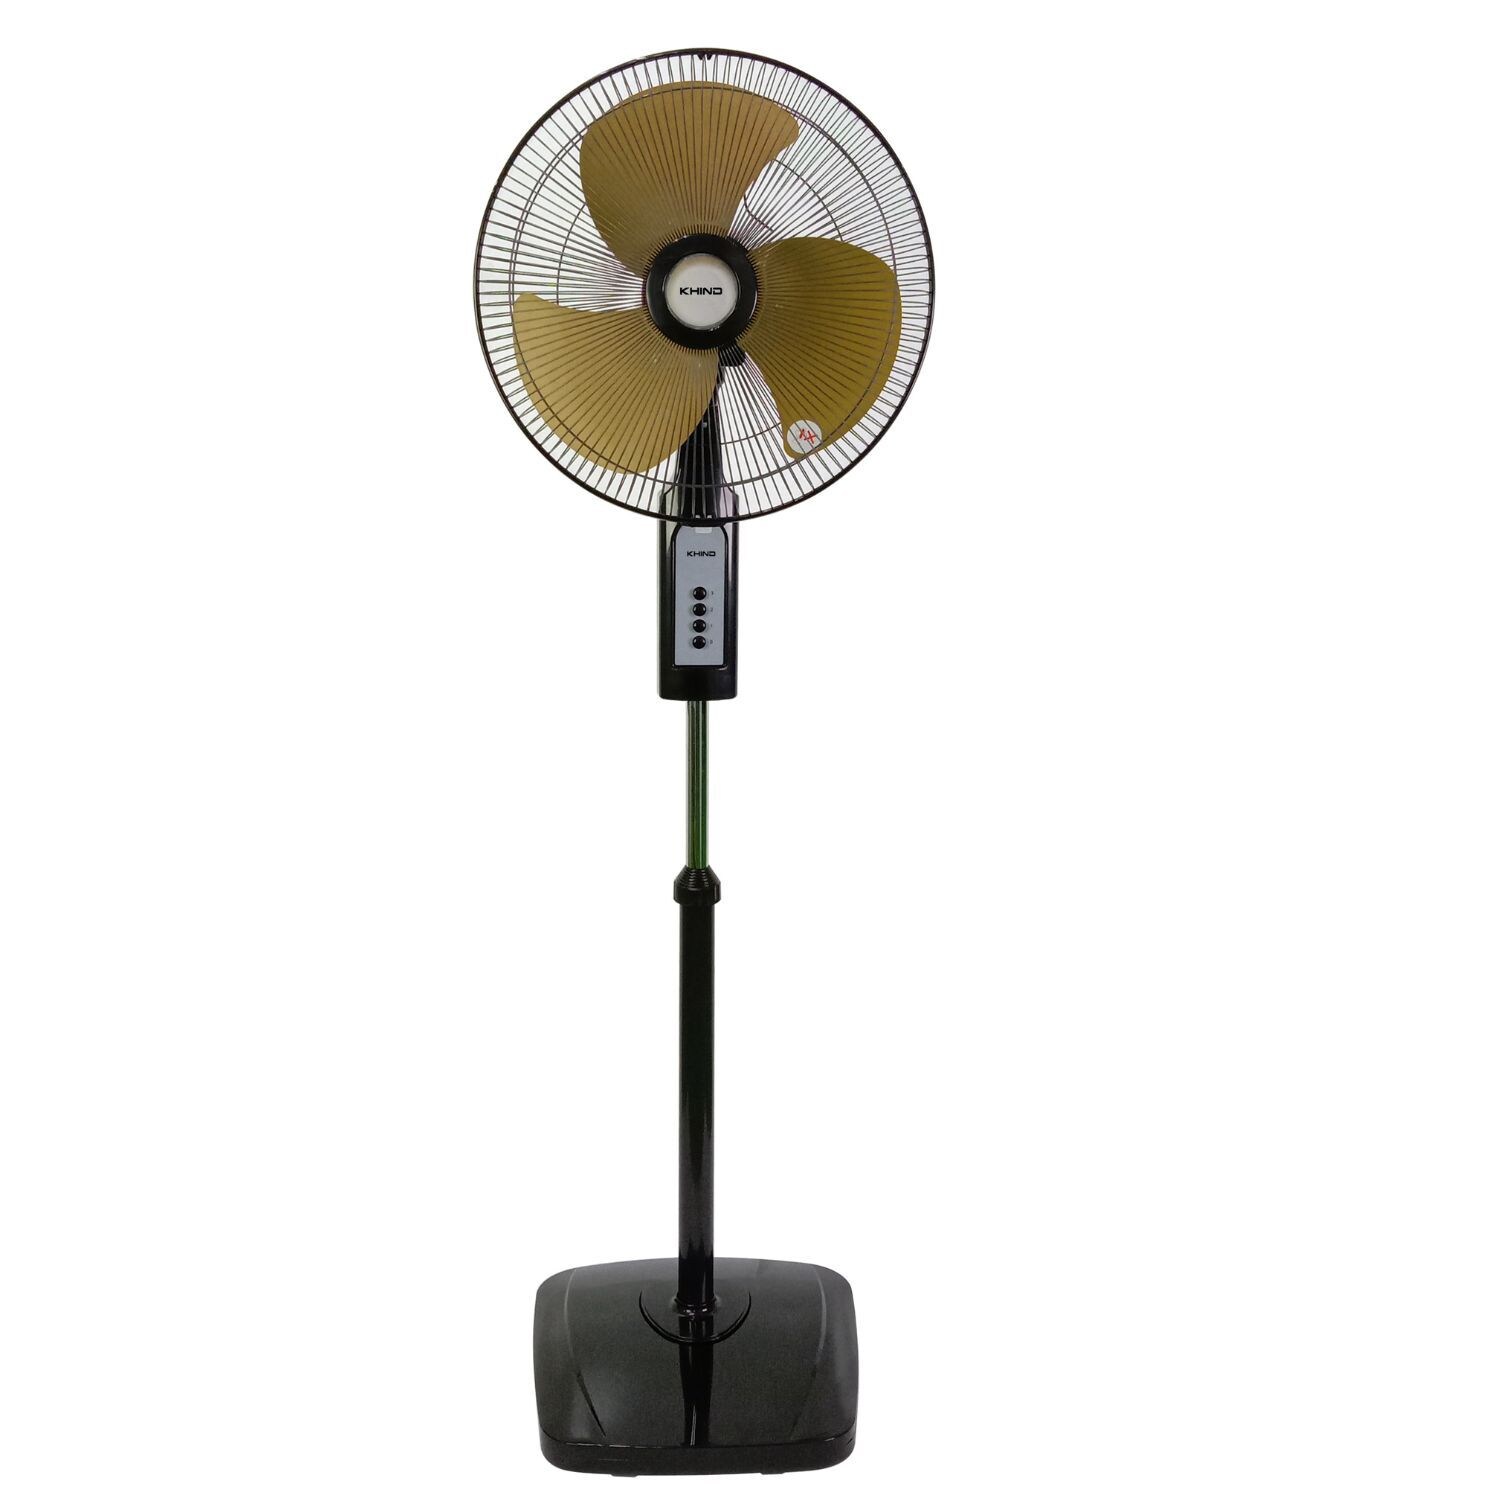 Khind Adjustable Height Pedestal Fan, SF169, Black